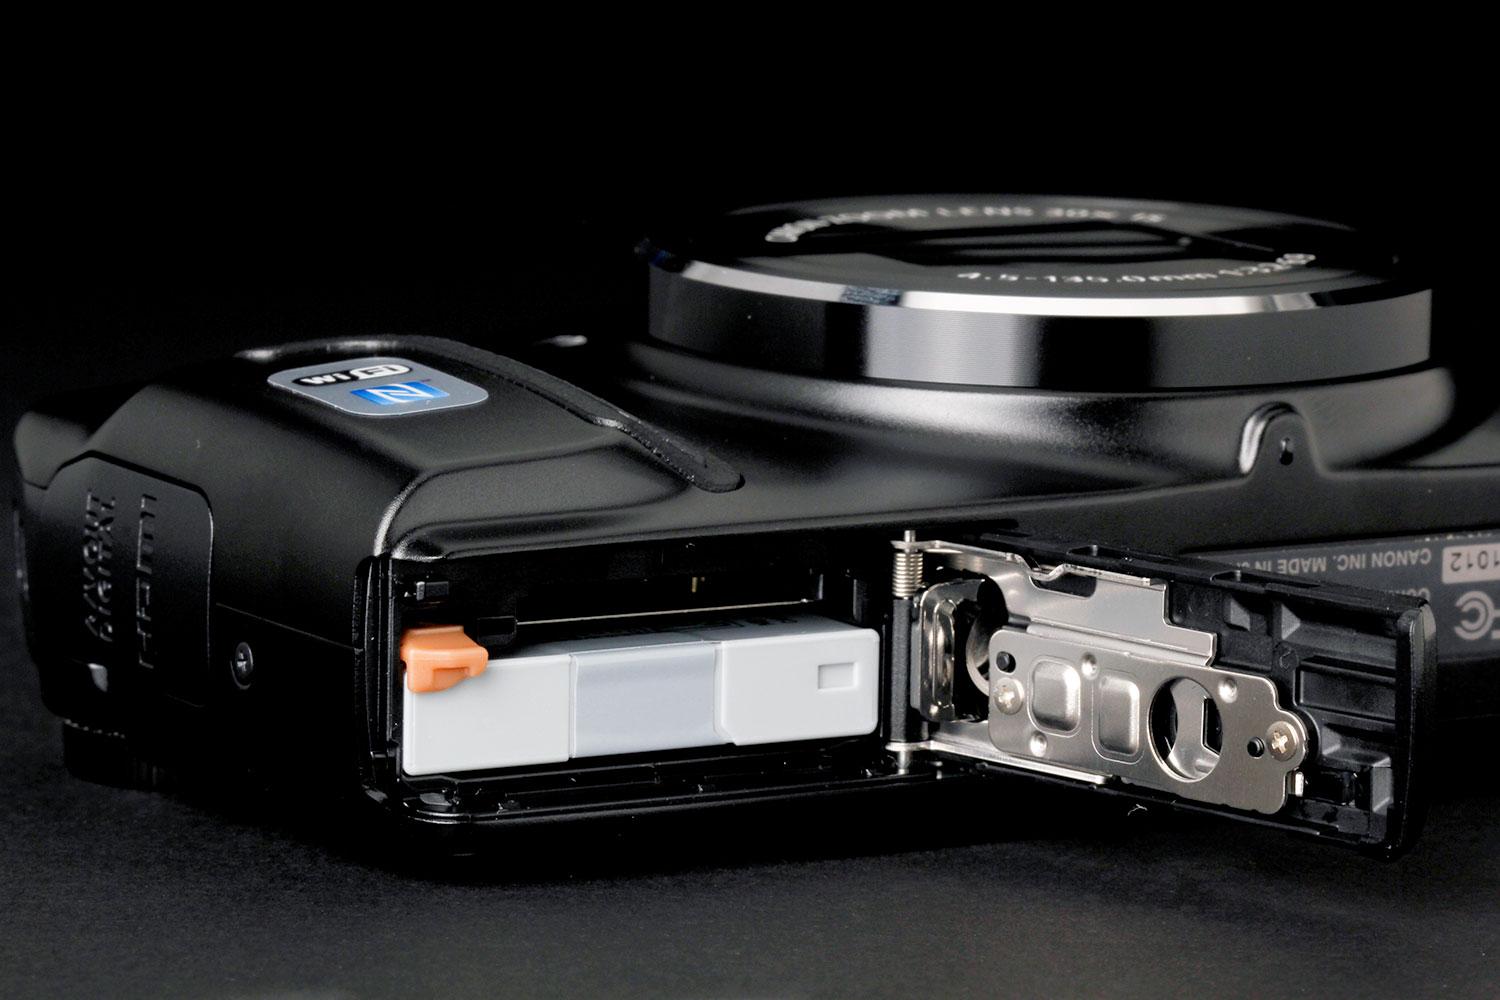 Canon Powershot SX700 HS review | Digital Trends